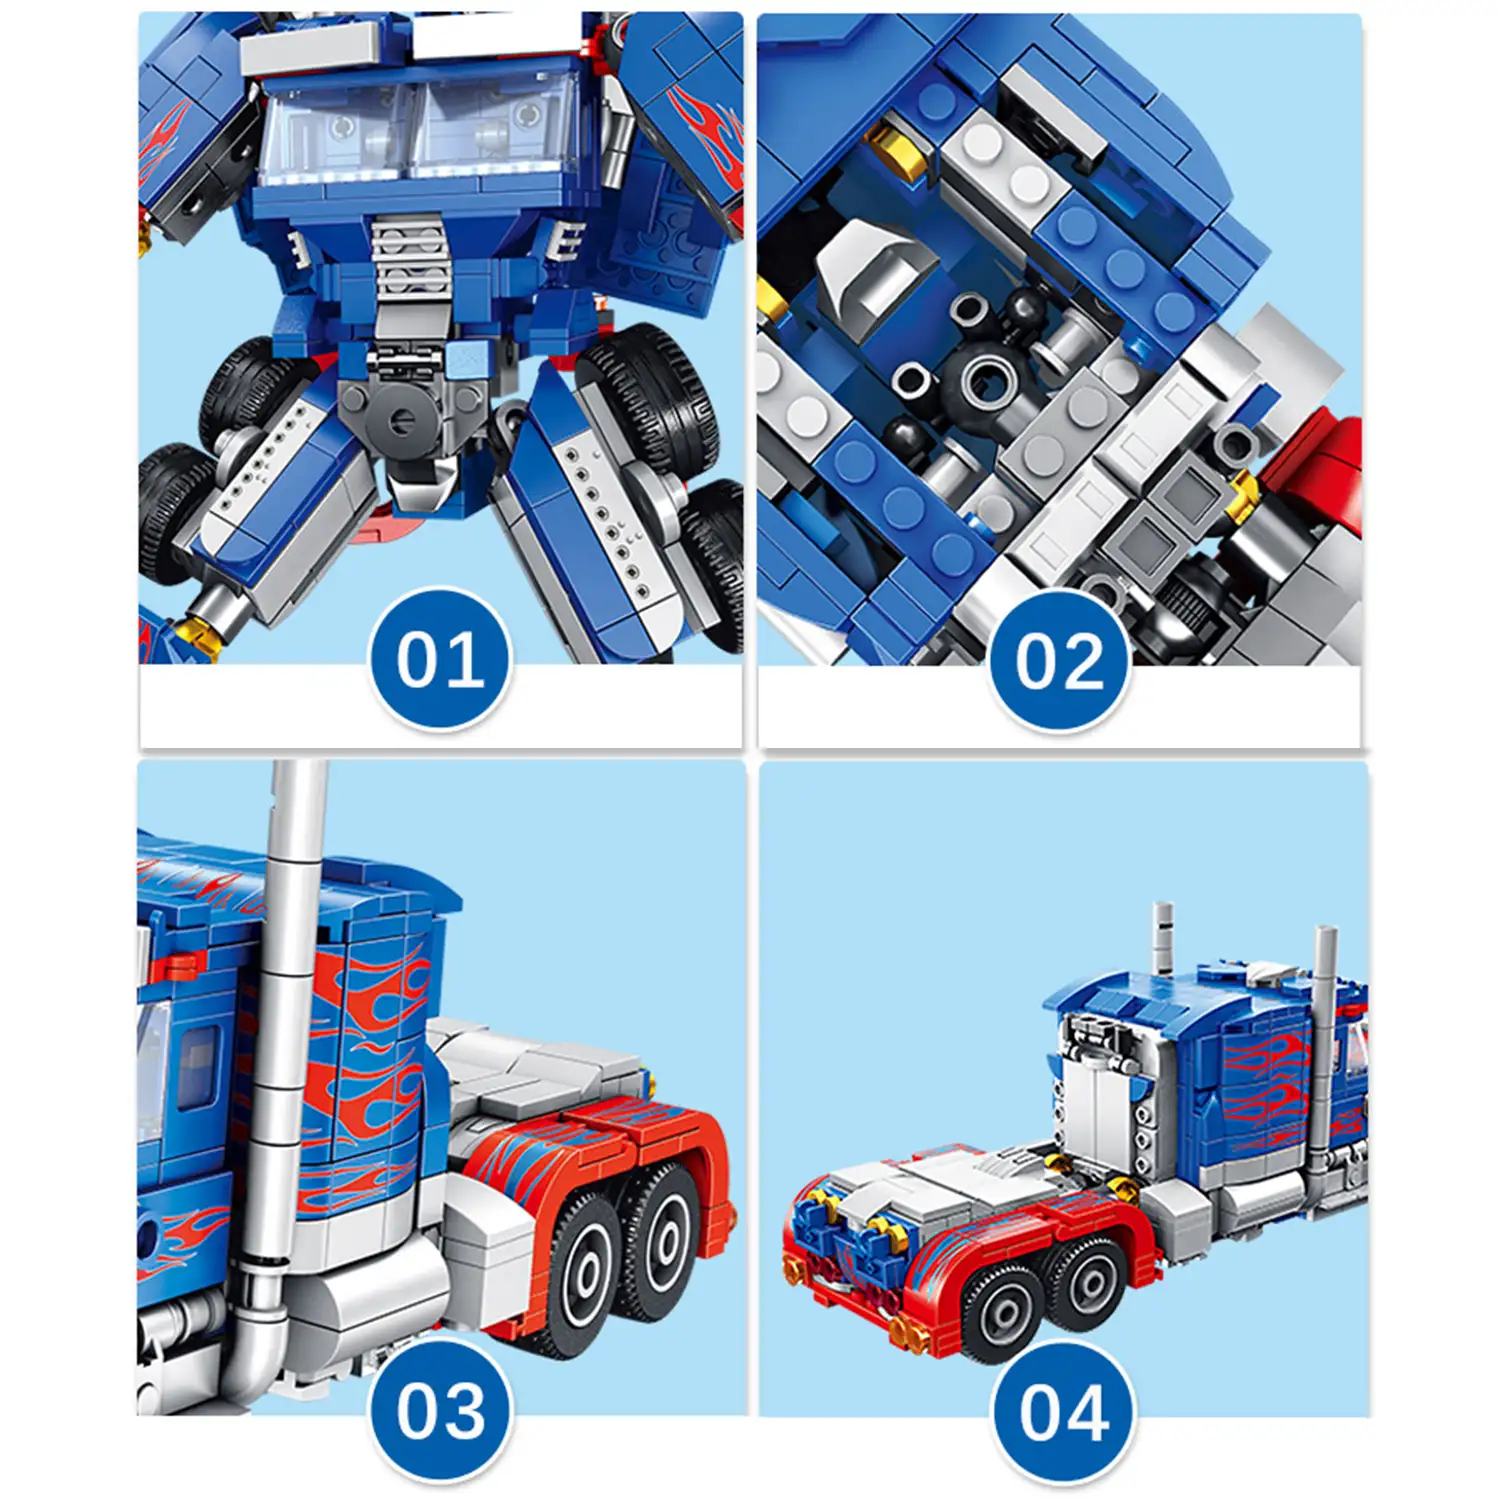 Robot convertible en camión, 833 piezas. Podrás construir otros 6 modelos de vehículos y robots.